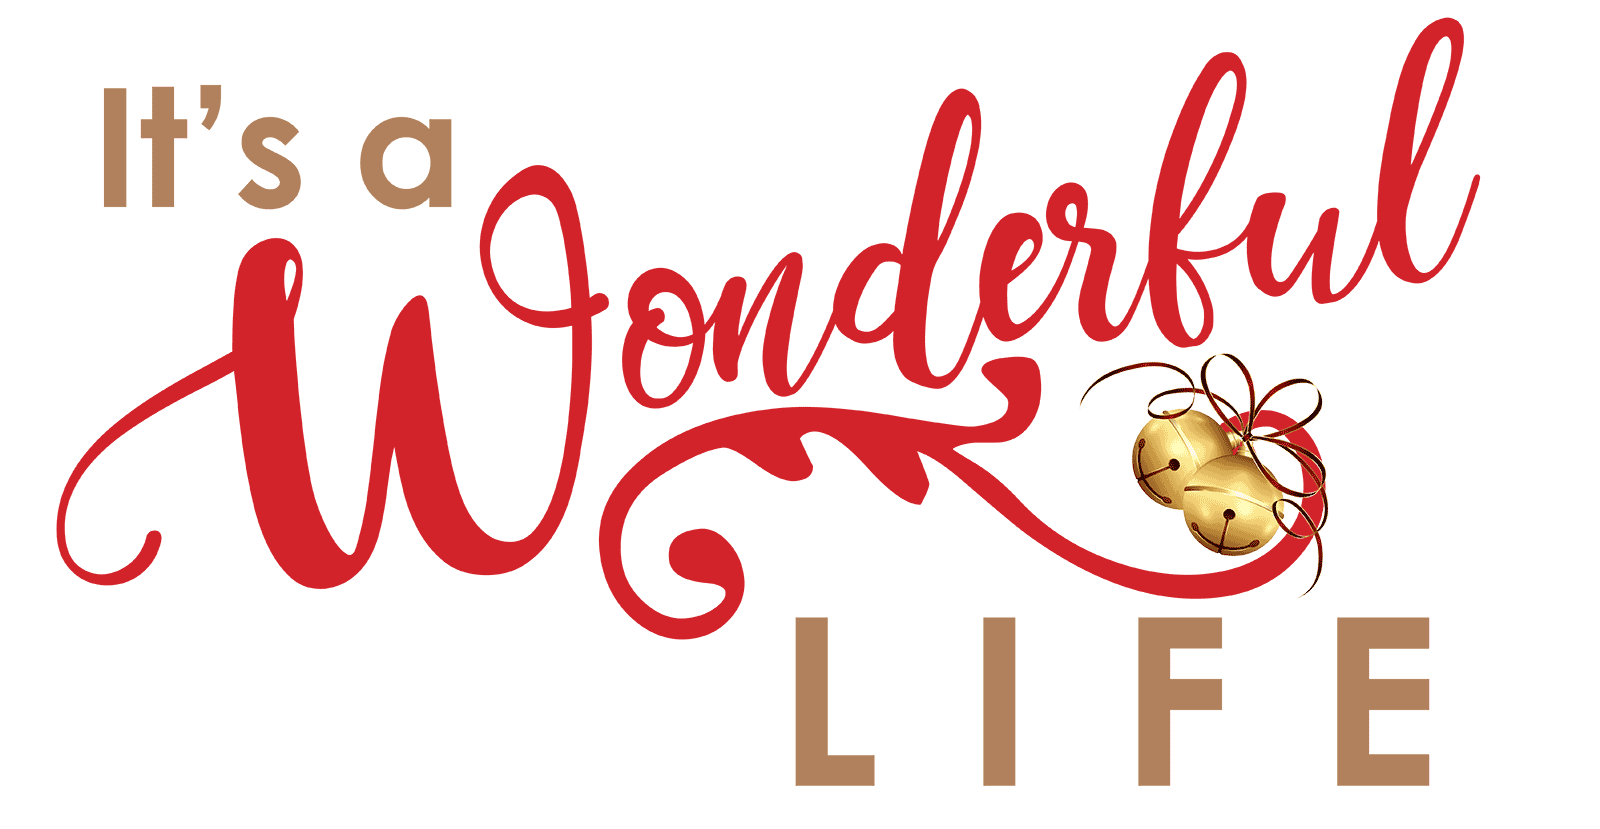 Wonderful life. Вандерфул лайф Пеппер. Im wonderful картинка. Wonderful Life Floor логотип. Логотип жизнь Соло.